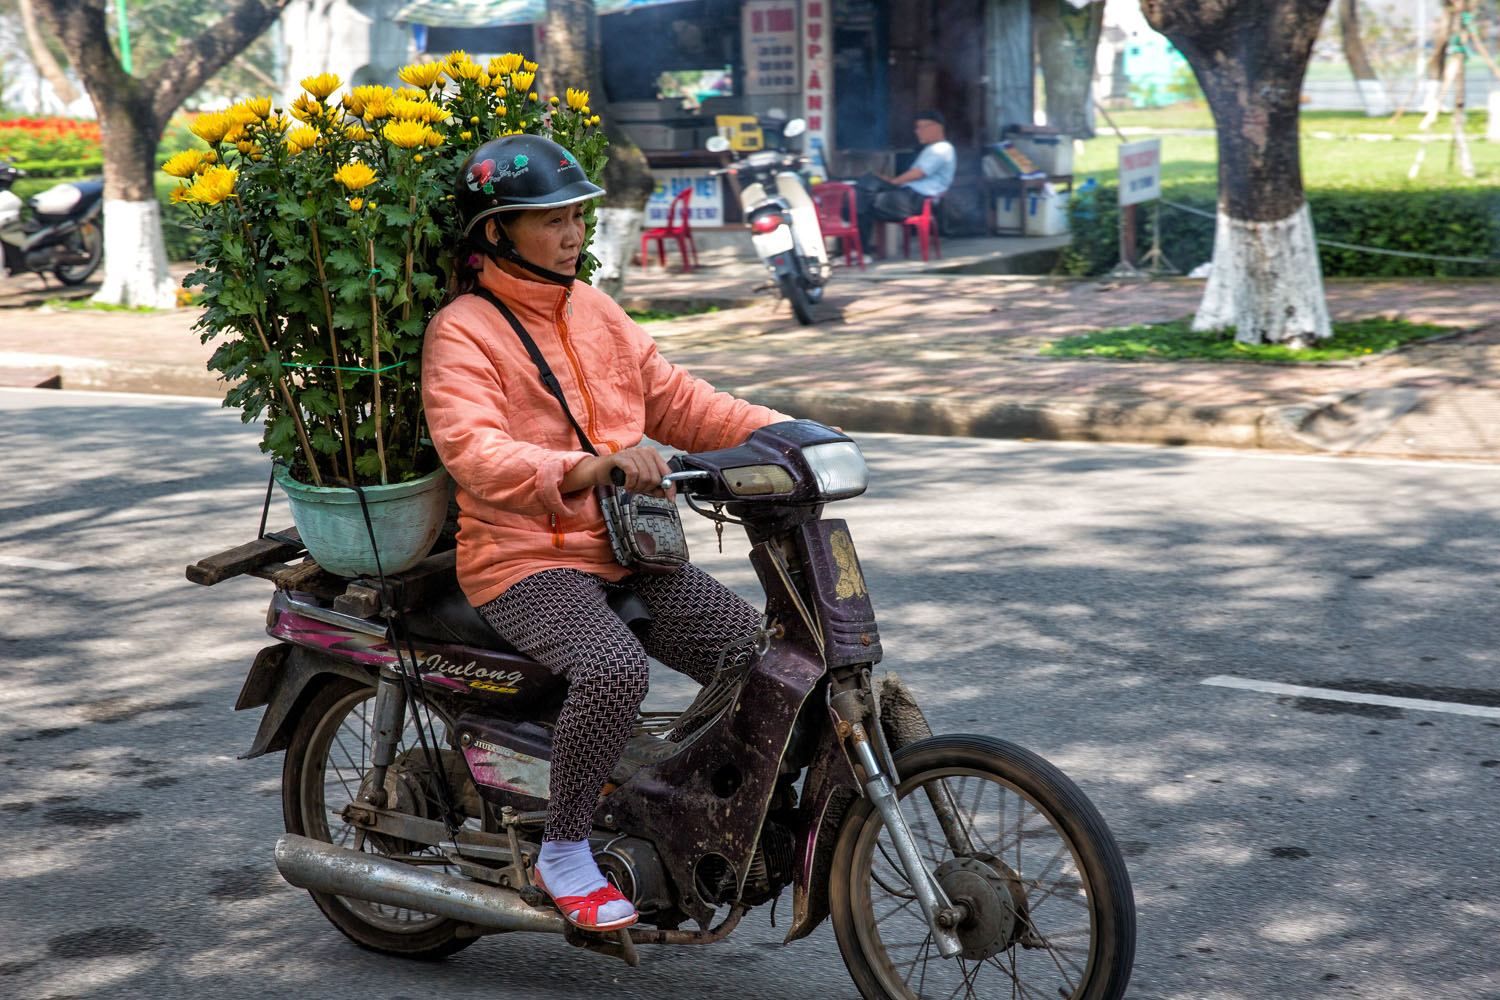 Motorbike with Chrysanthemums